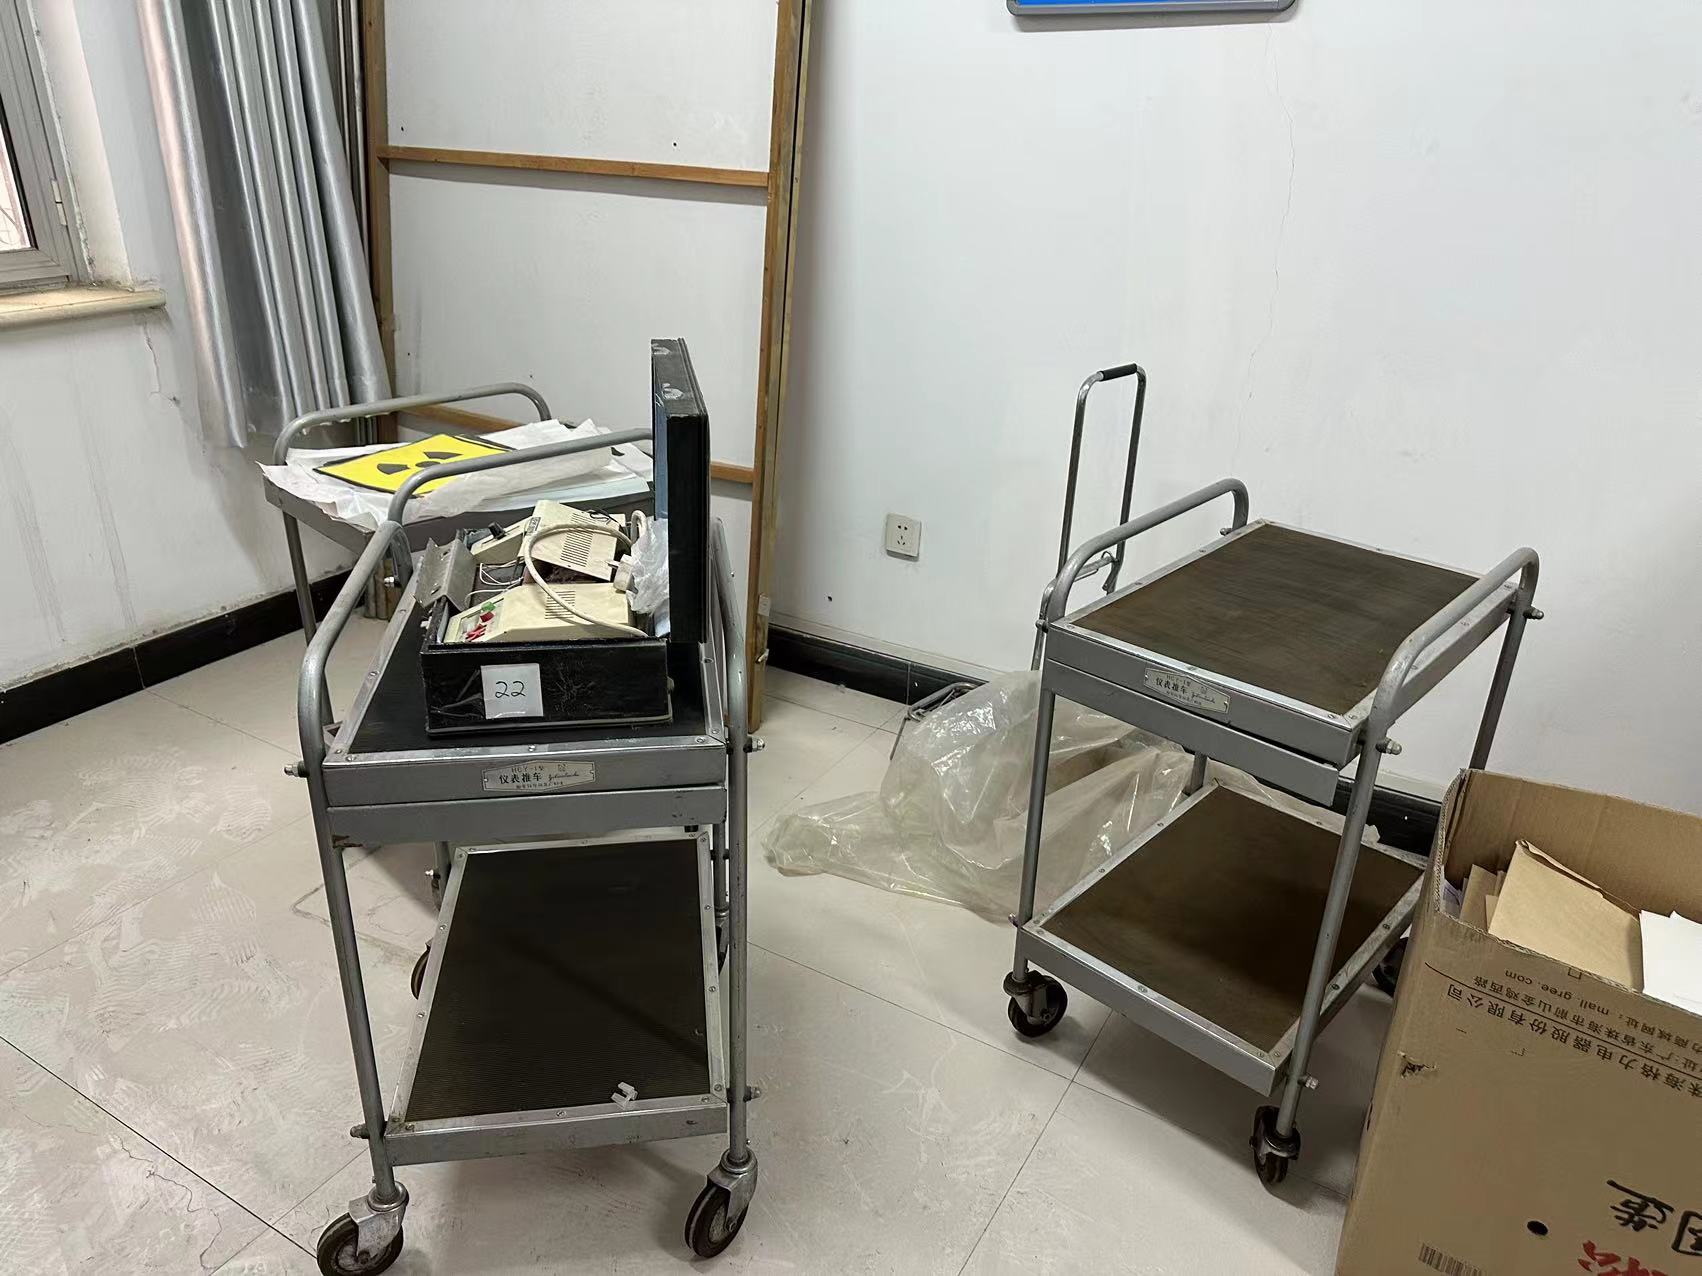 宁夏回族自治区医院评价指导服务中心专用设备处置项目出售招标